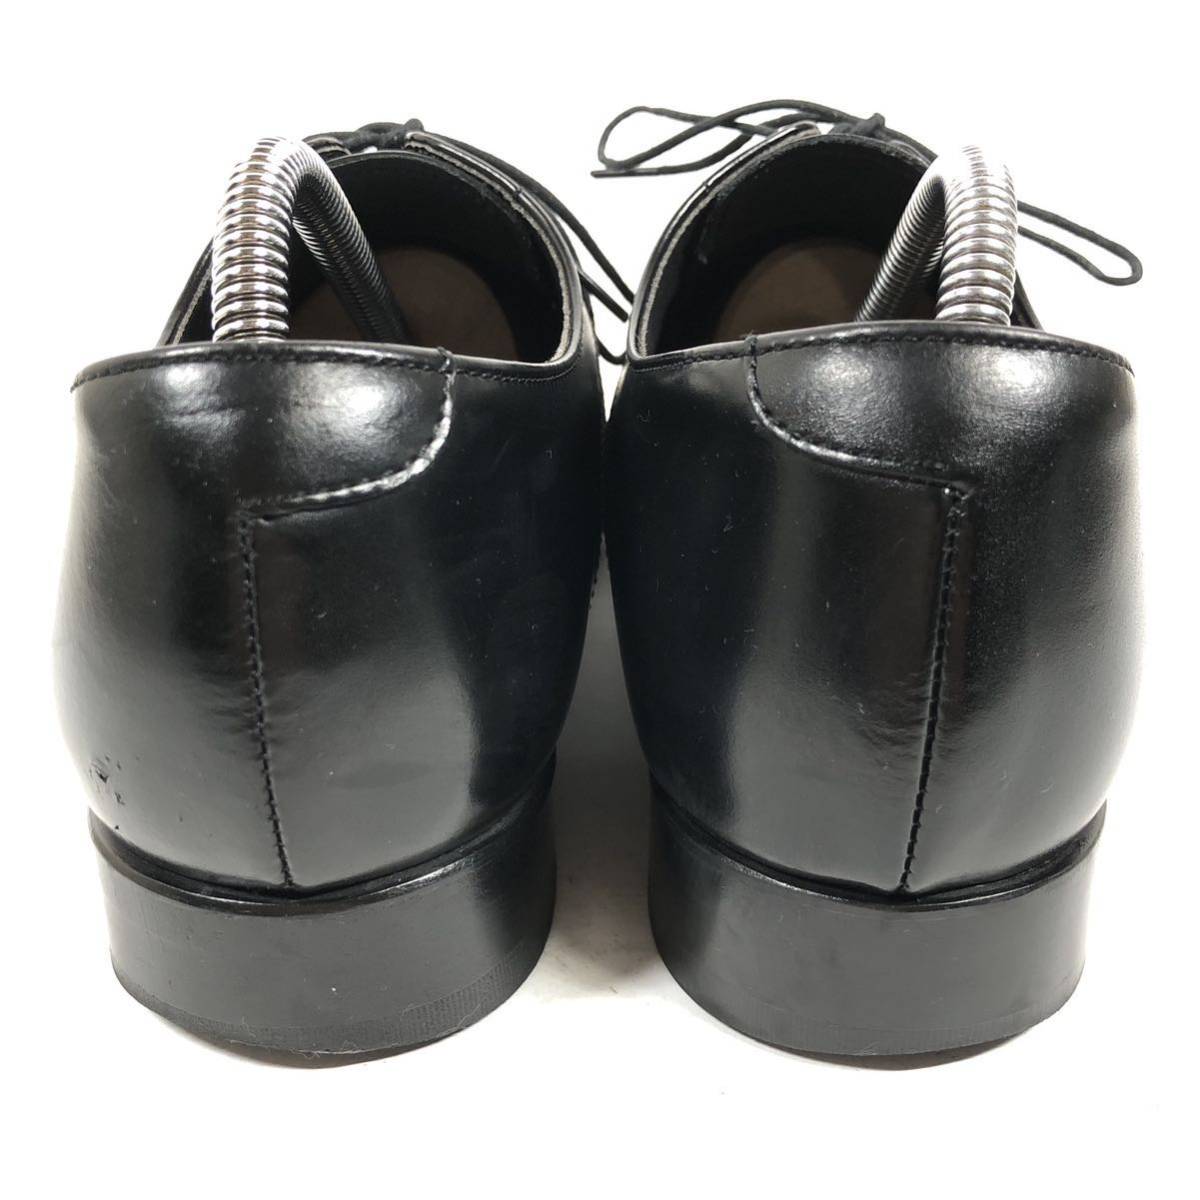 【リーガル】基準内 REGAL 靴 25cm 黒 スワールトゥ ビジネスシューズ 外羽根式 本革 レザー 男性用 メンズ 日本製 25_画像3